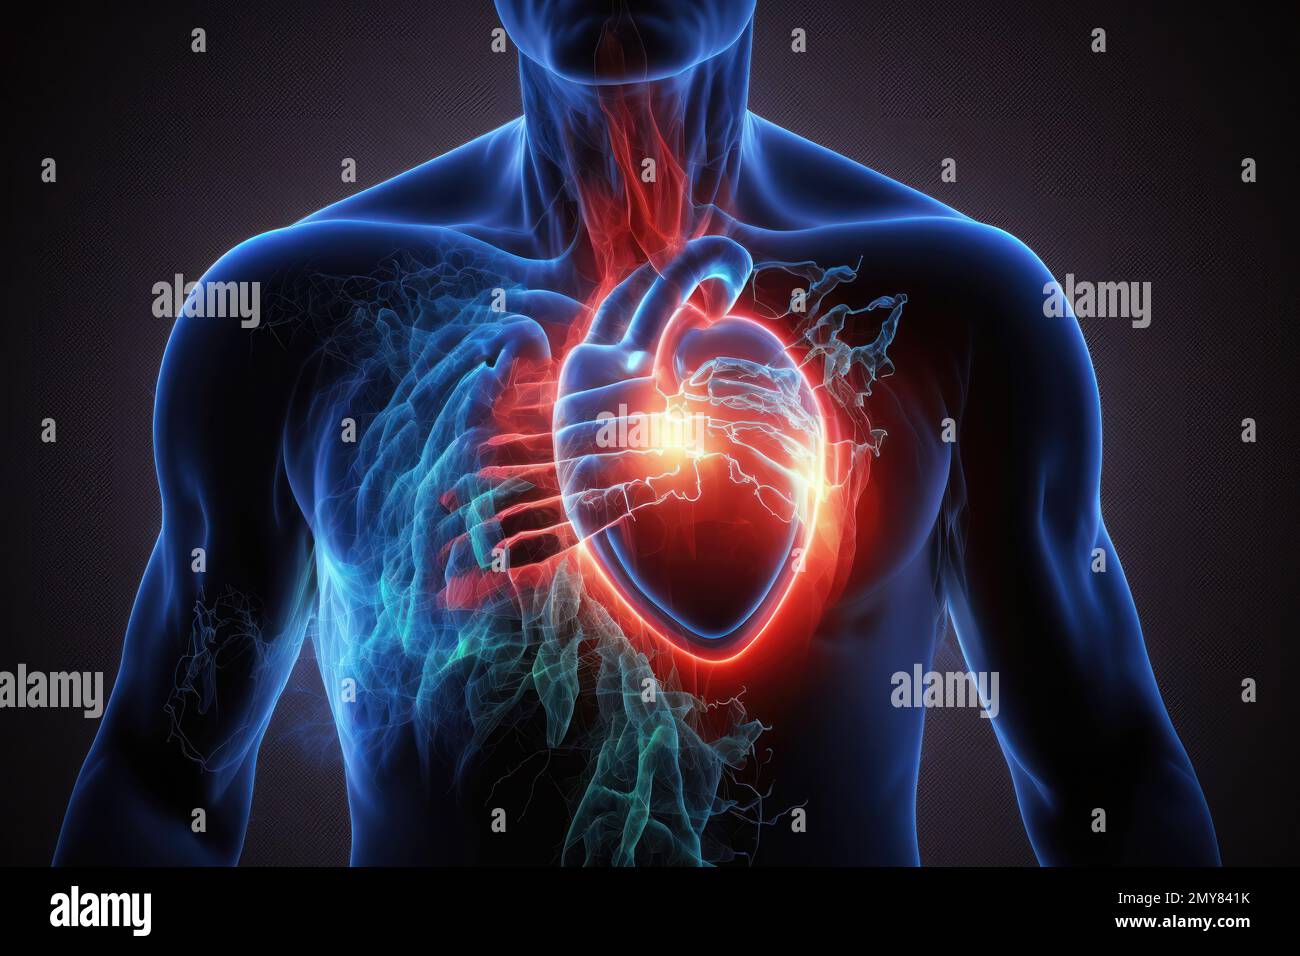 Una ilustración de ataque cardíaco es una representación visual de los síntomas, causas y efectos de un ataque cardíaco. Puede ser un dibujo, una pintura o un dígito Foto de stock